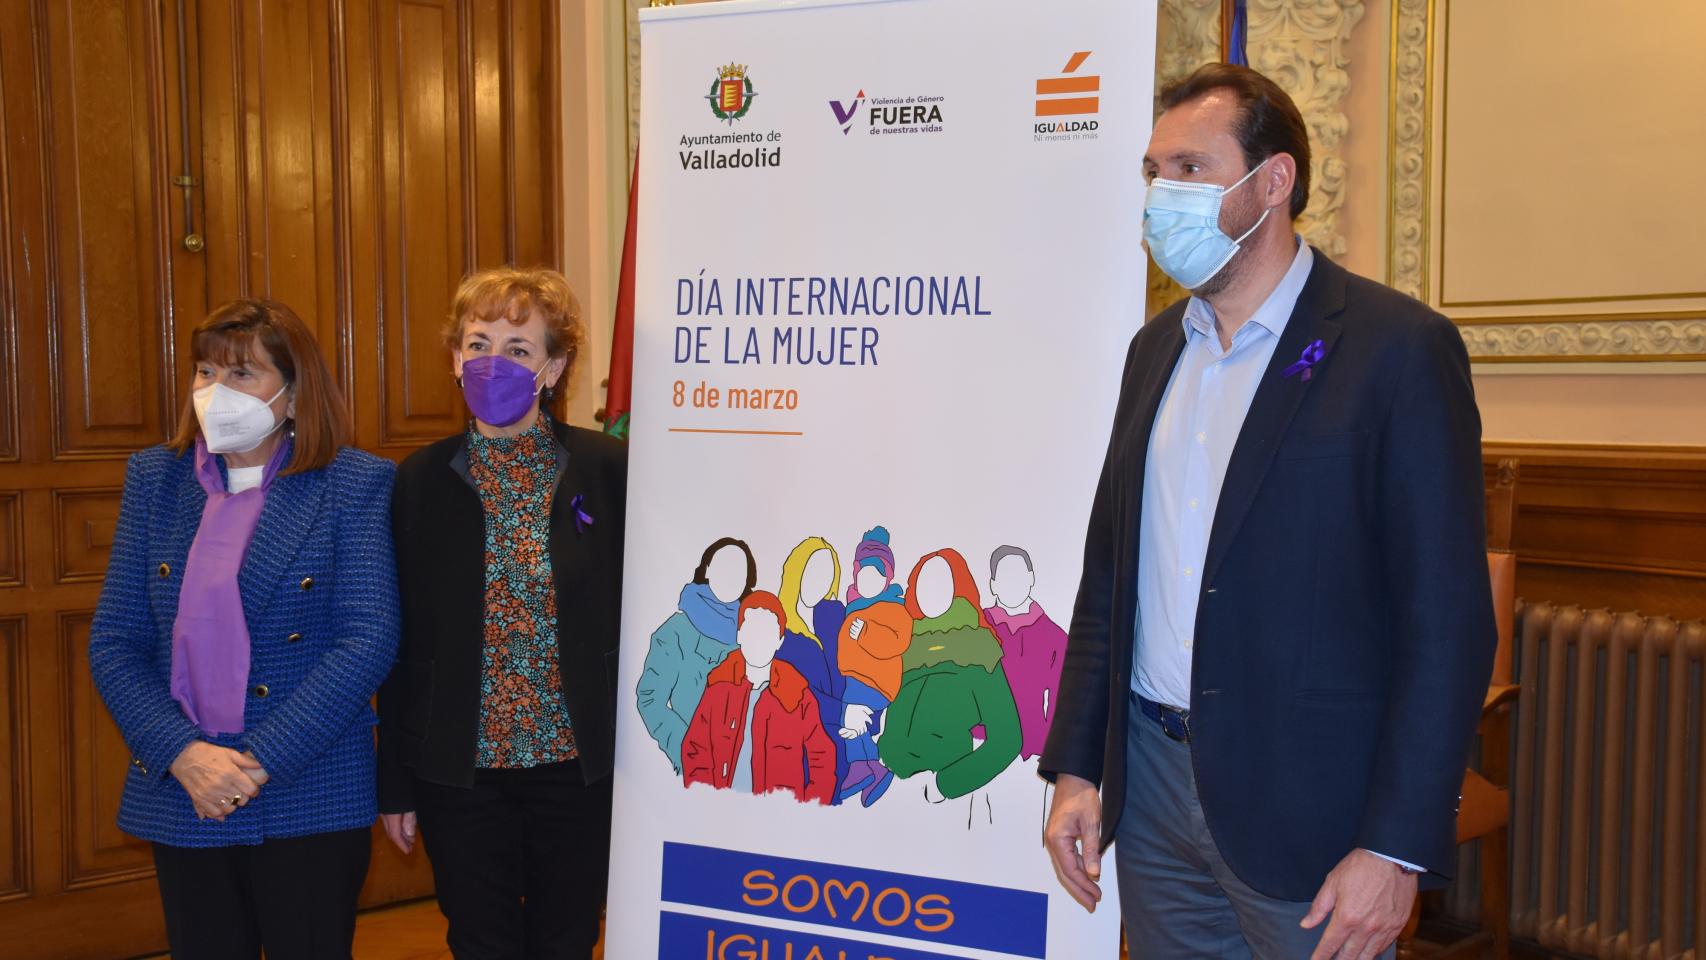 Maria Victoria Soto, Ana Gallego y Óscar puene en la presentación del acto institucional del 8-M